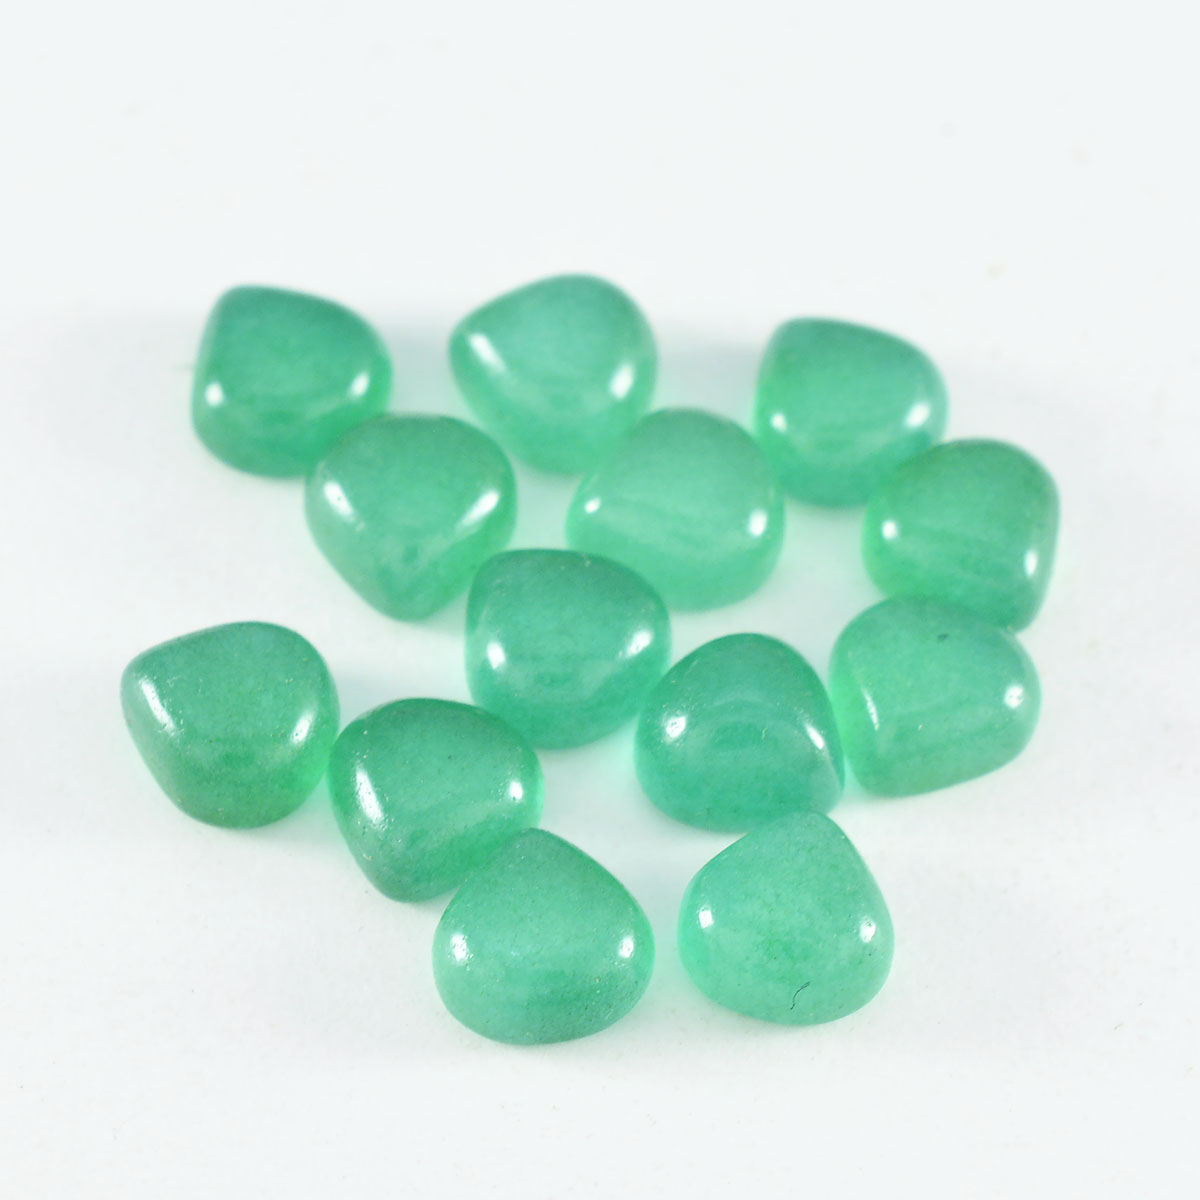 Riyogems 1pc cabochon onyx vert 7x7mm forme de coeur belle qualité pierre précieuse en vrac